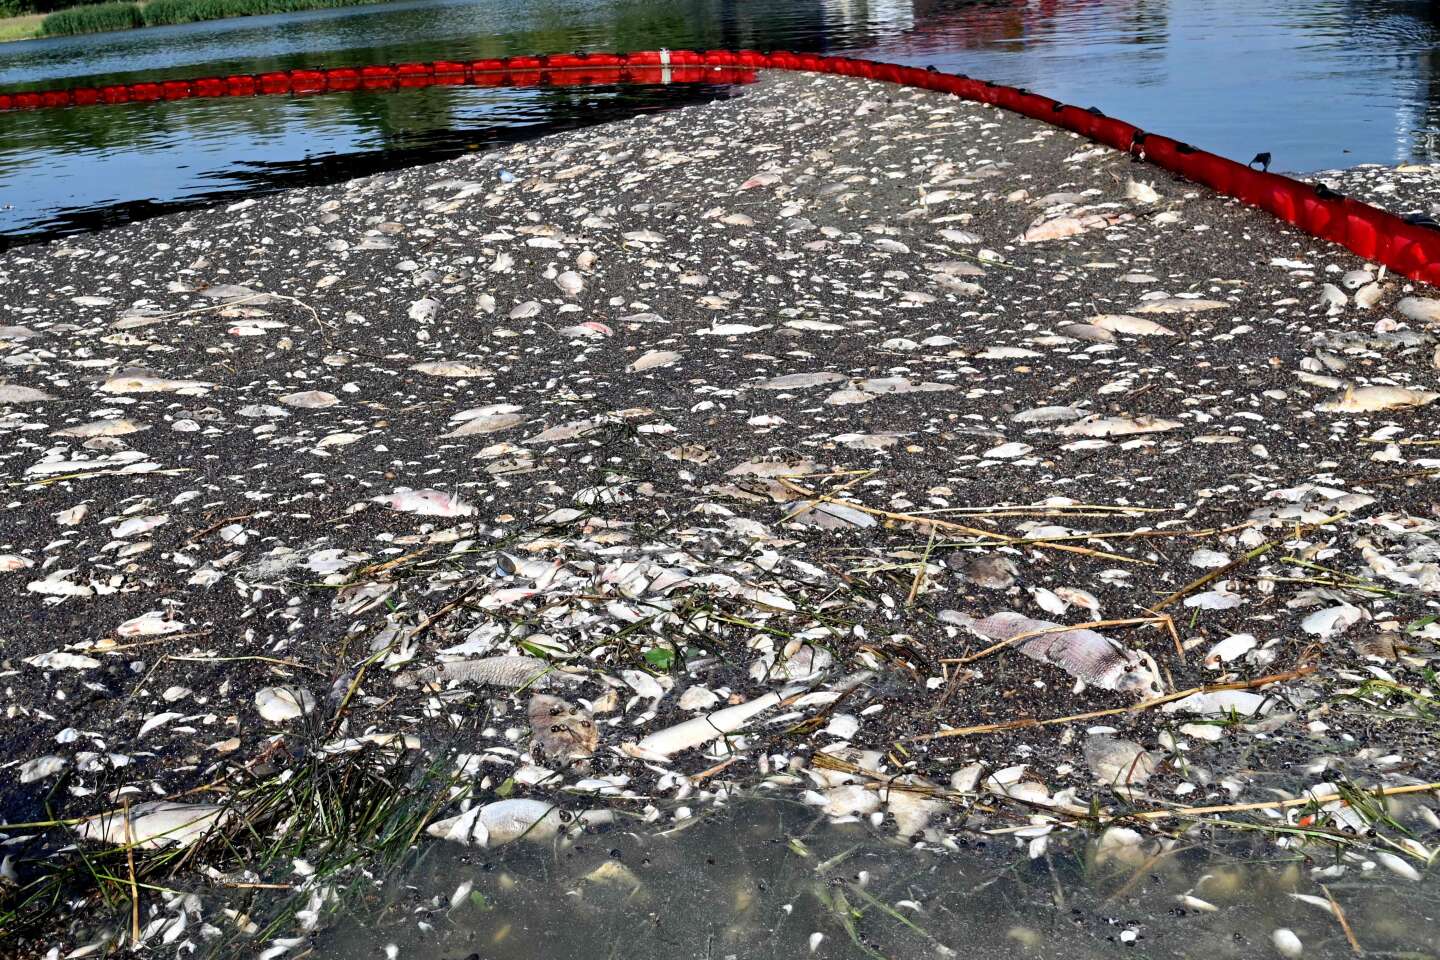 Prawie 100 ton ryb zginęło w Odrze w Polsce, katastrofa ekologiczna bez wyjaśnienia